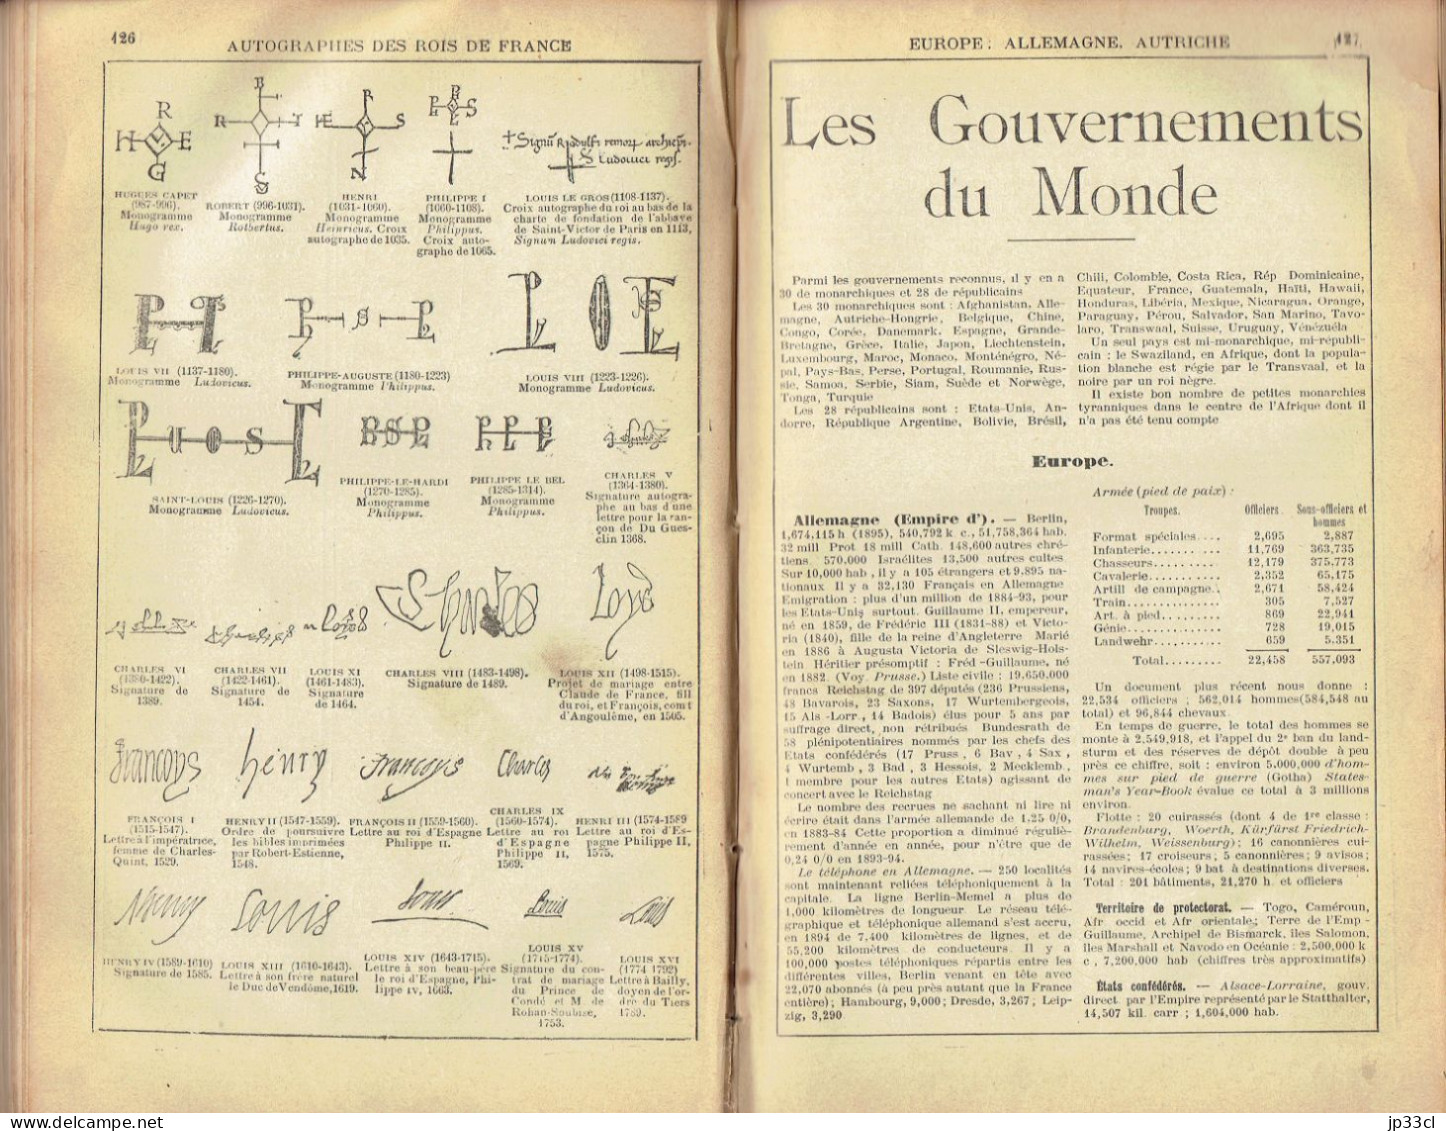 Le Tout-savoir Universel (Édition Spéciale Pour La Belgique) Édit. Dechenne, Bruxelles, Vers 1897, 494 Pages - Encyclopédies